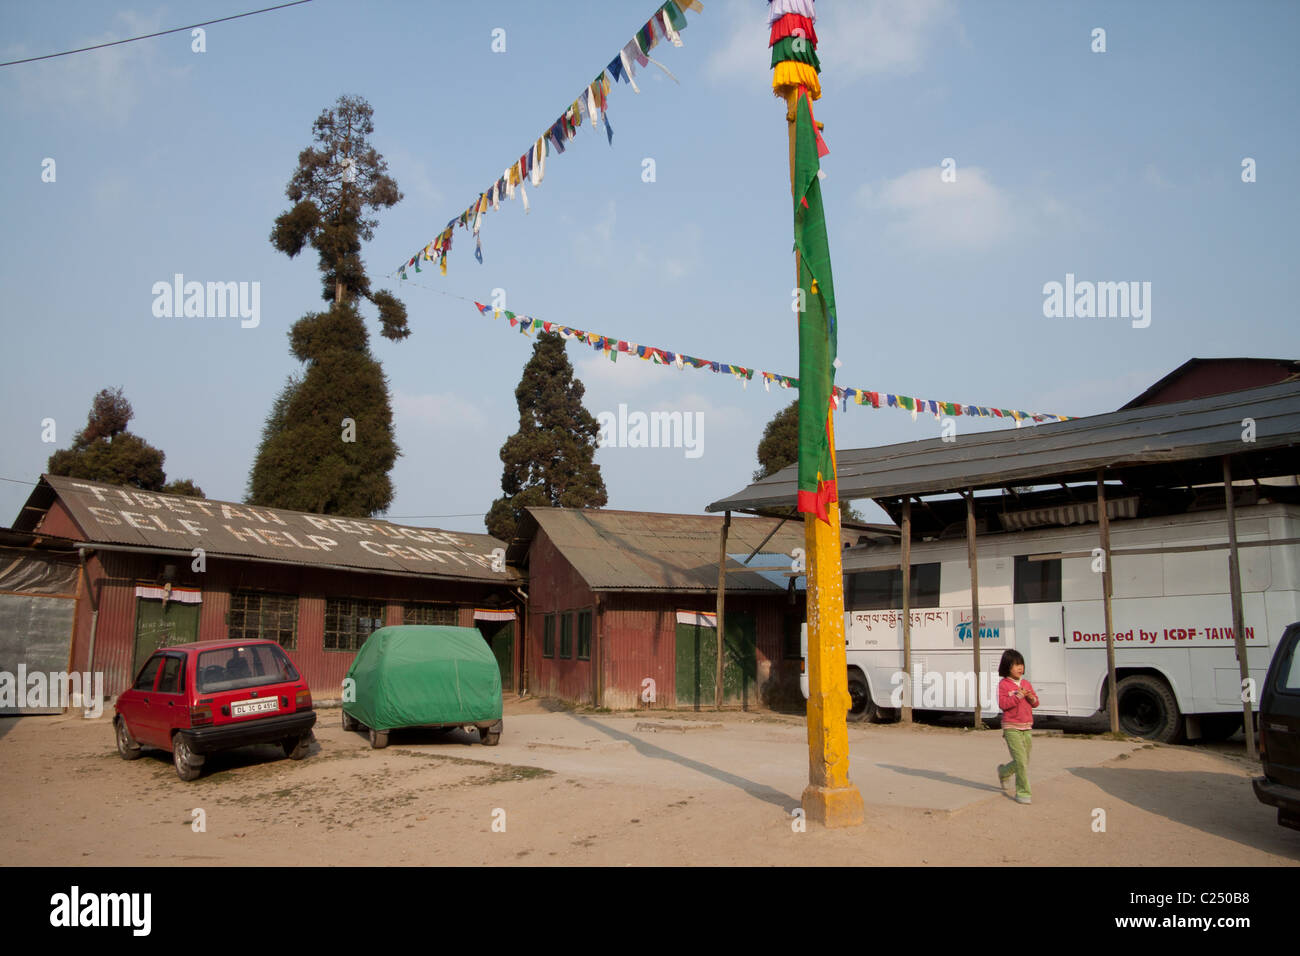 The Tibetan refugee self help centre in Darjeeling, West Bengal, India. Stock Photo